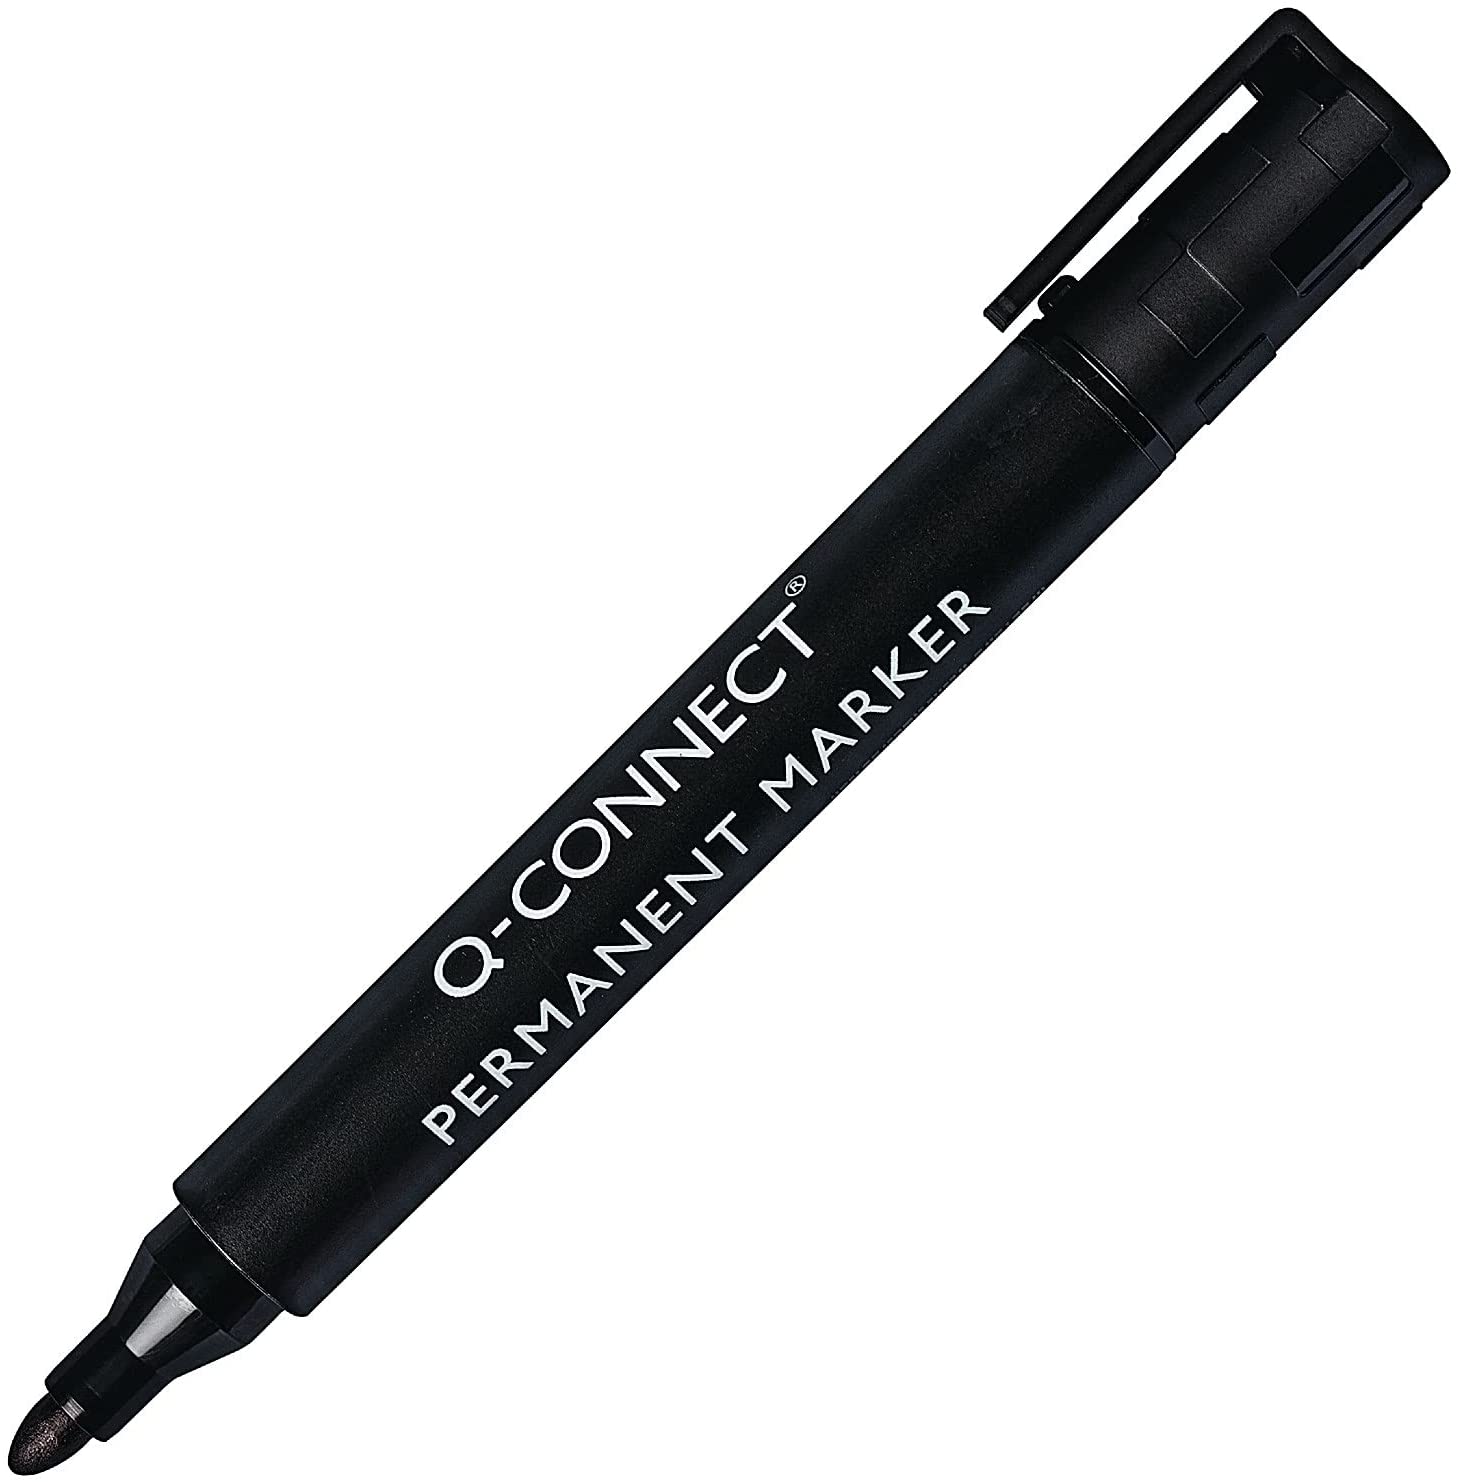 Pack of 10 Bullet Tip Black Permanent Marker Pens